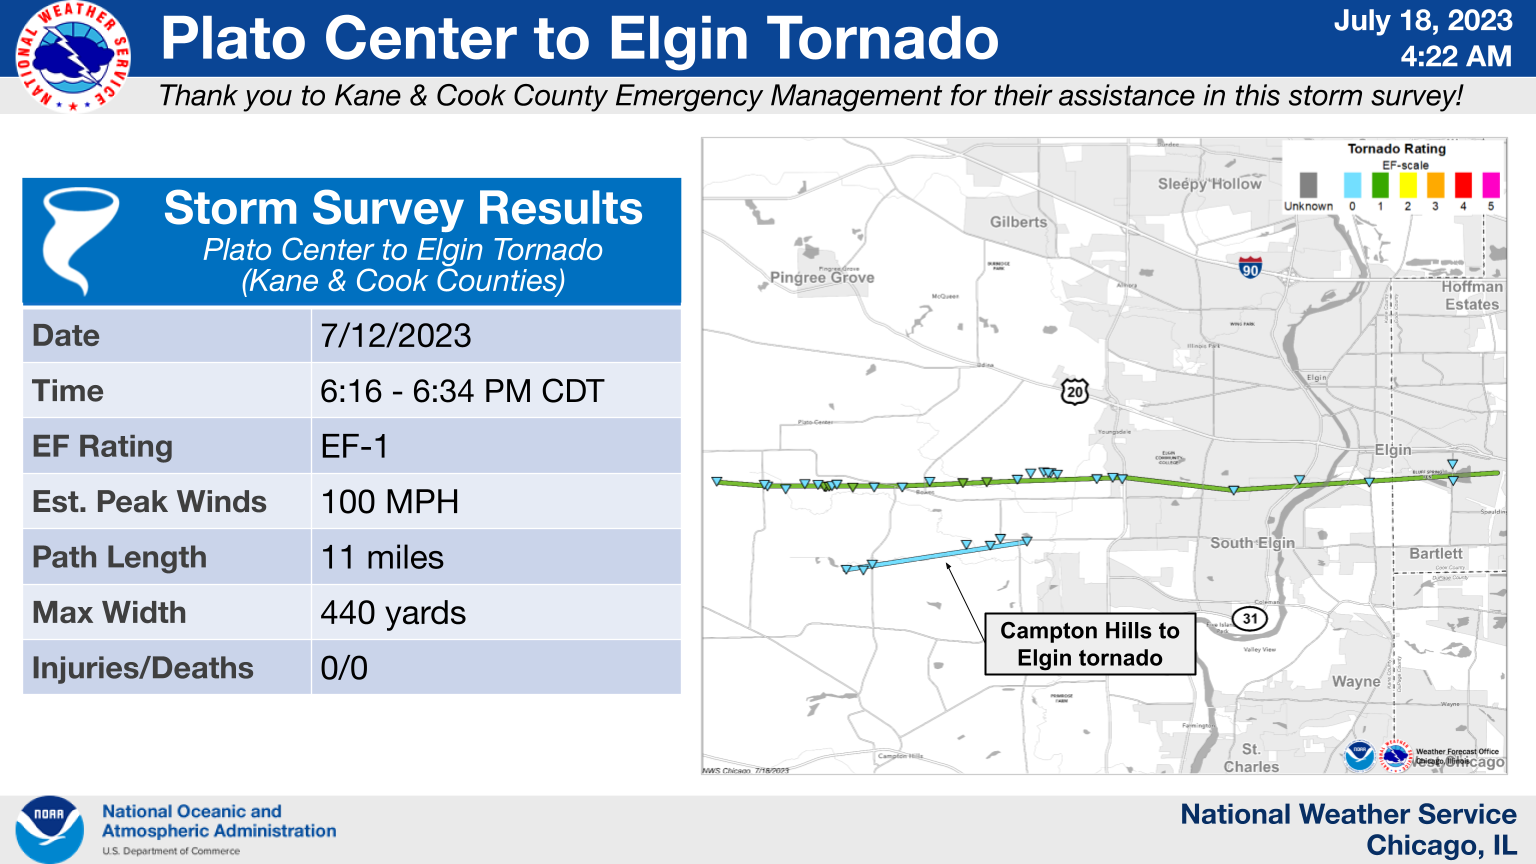 Plato Center to Elgin Tornado Map